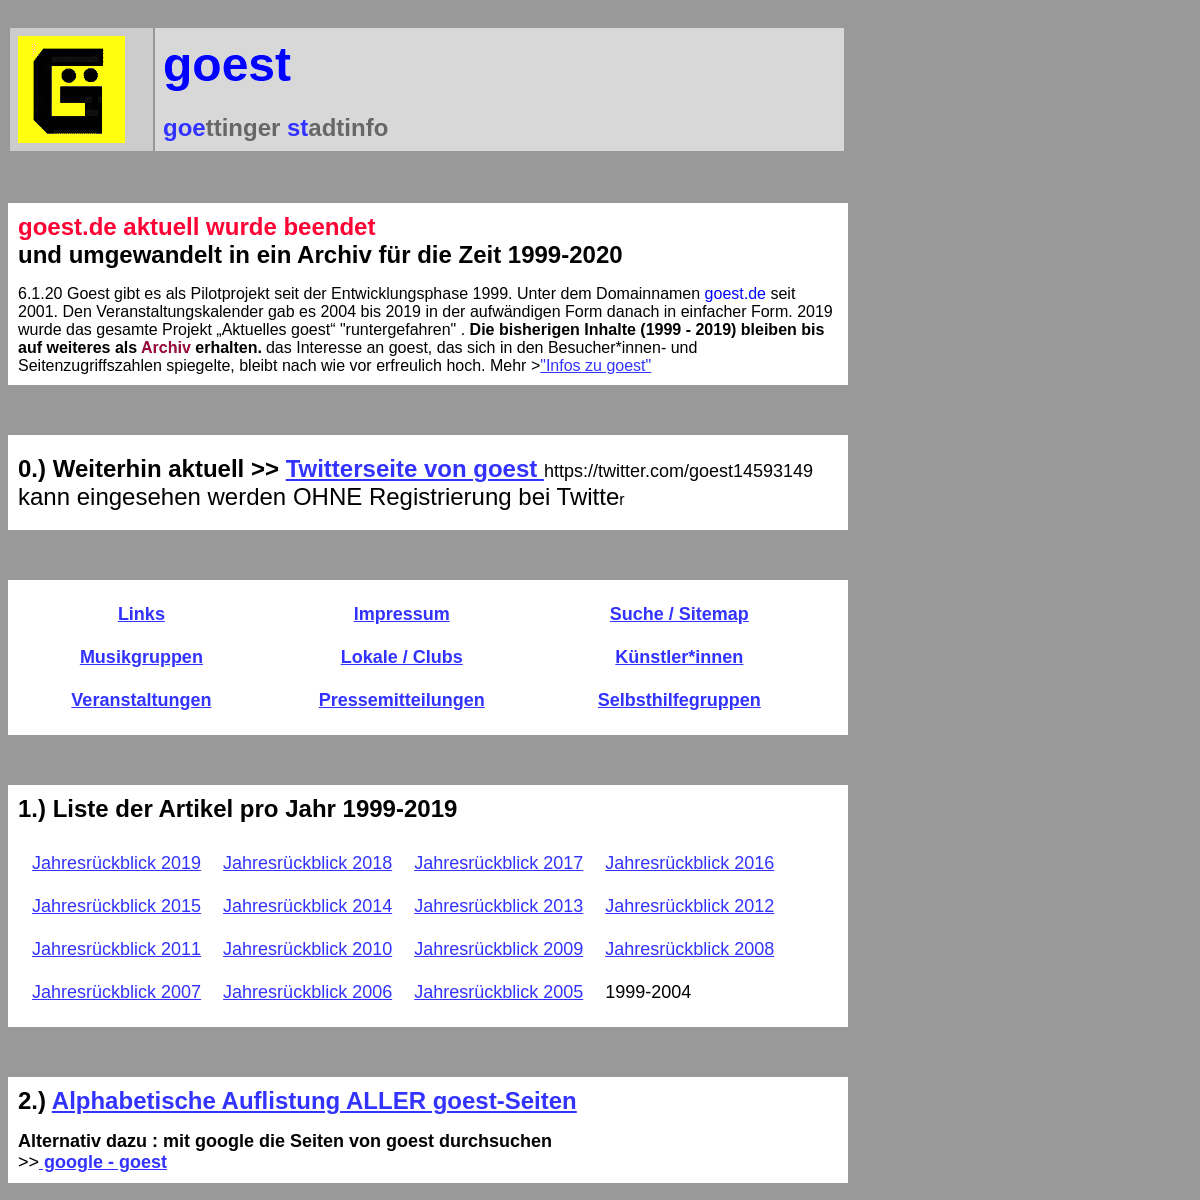 A complete backup of https://goest.de